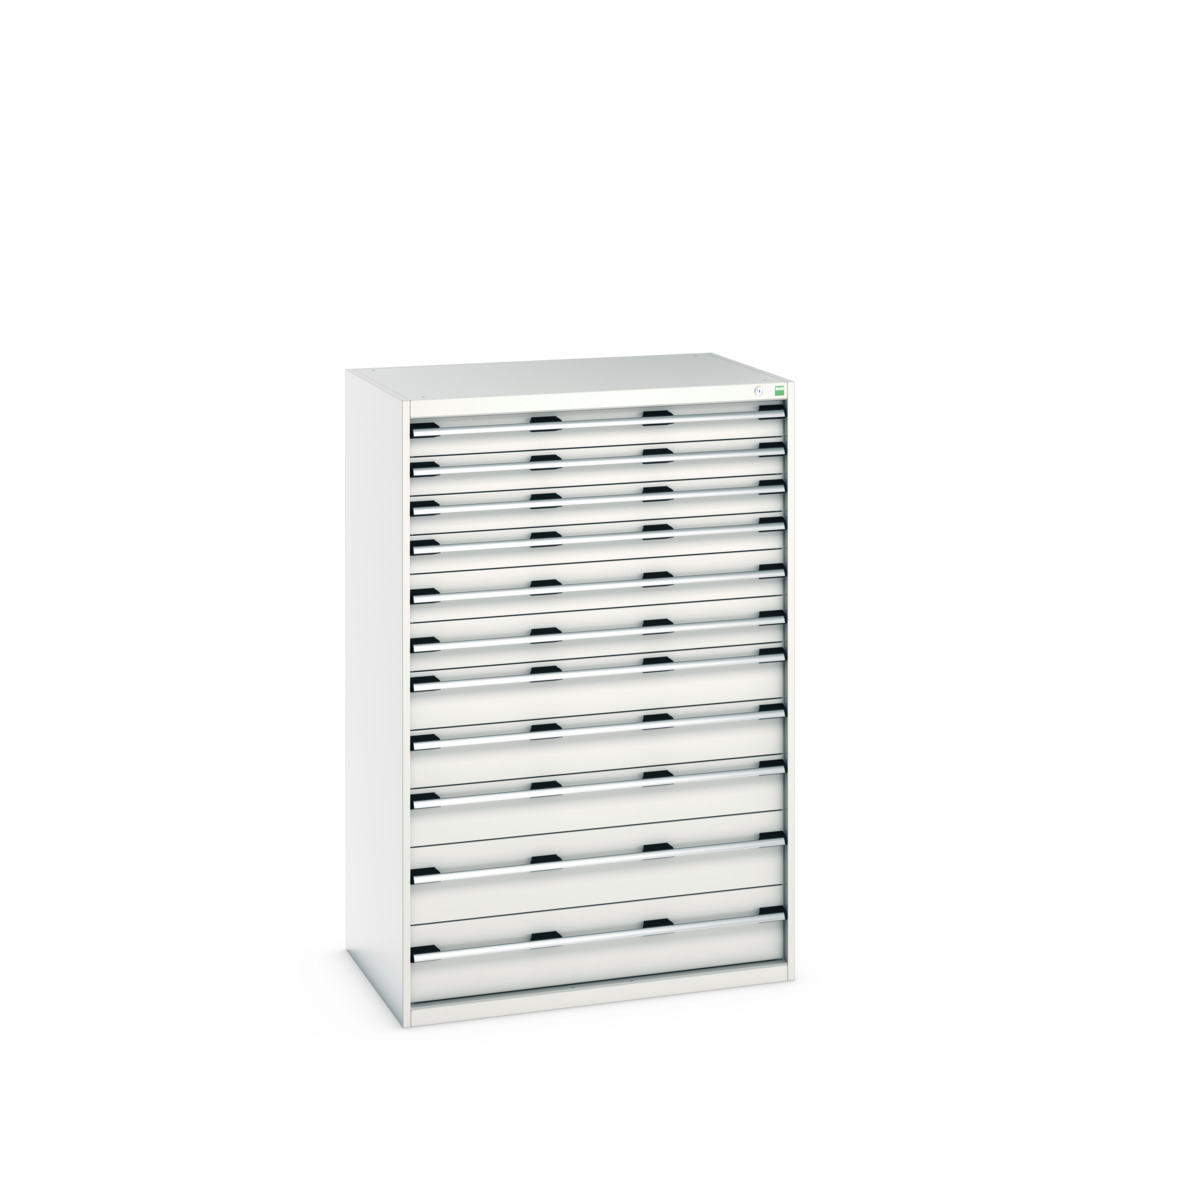 40029037.16V - cubio drawer cabinet